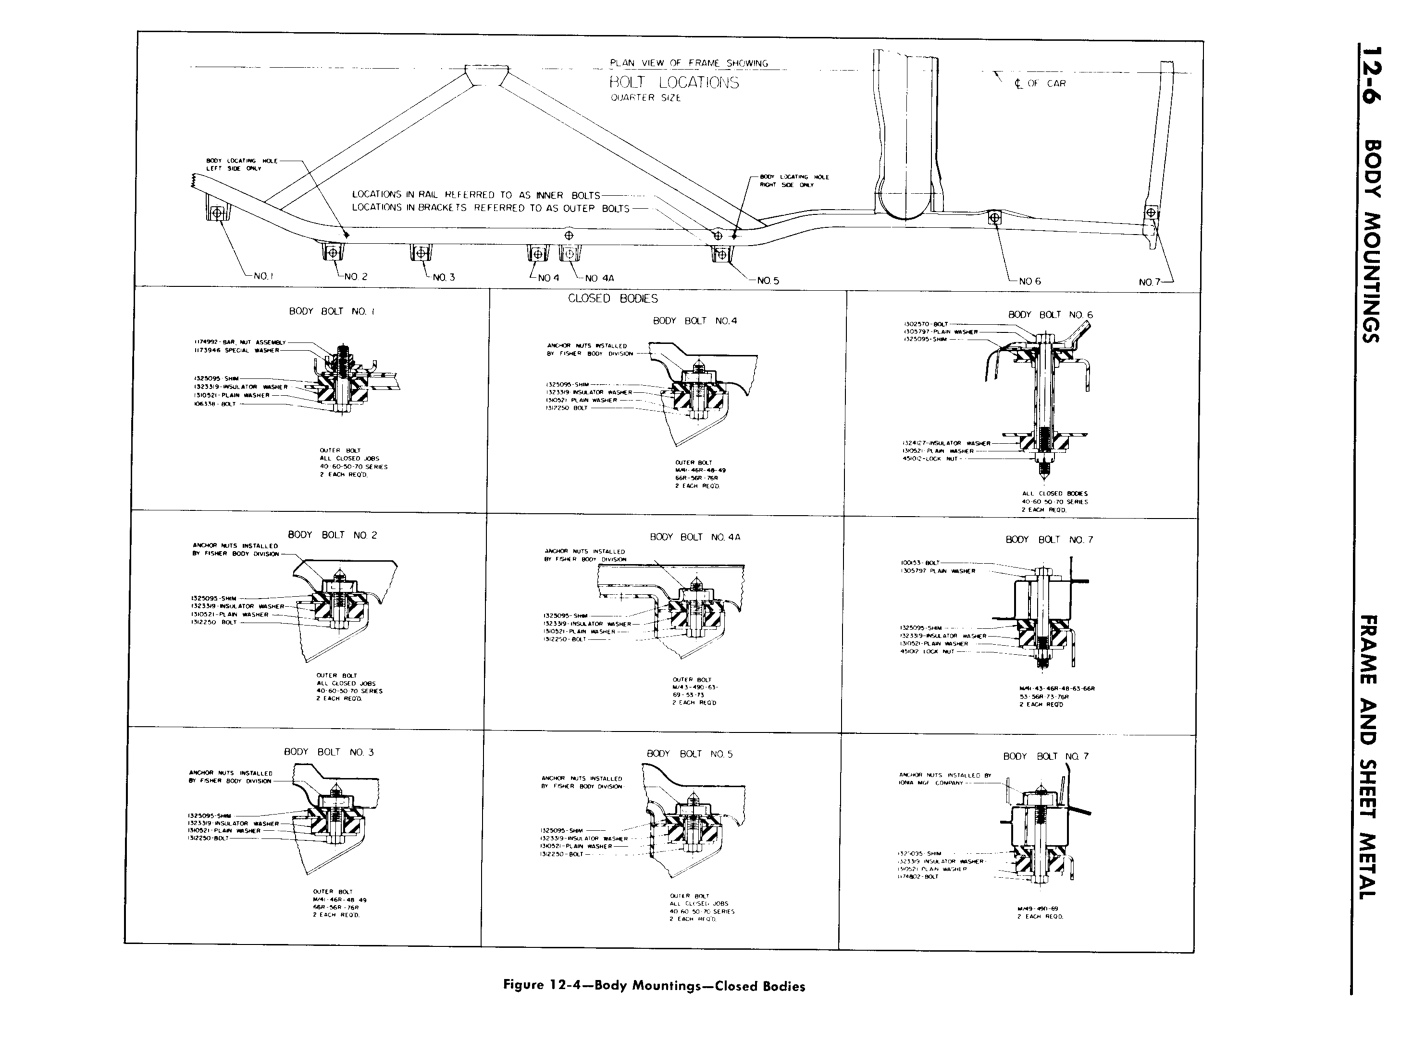 n_13 1957 Buick Shop Manual - Frame & Sheet Metal-006-006.jpg